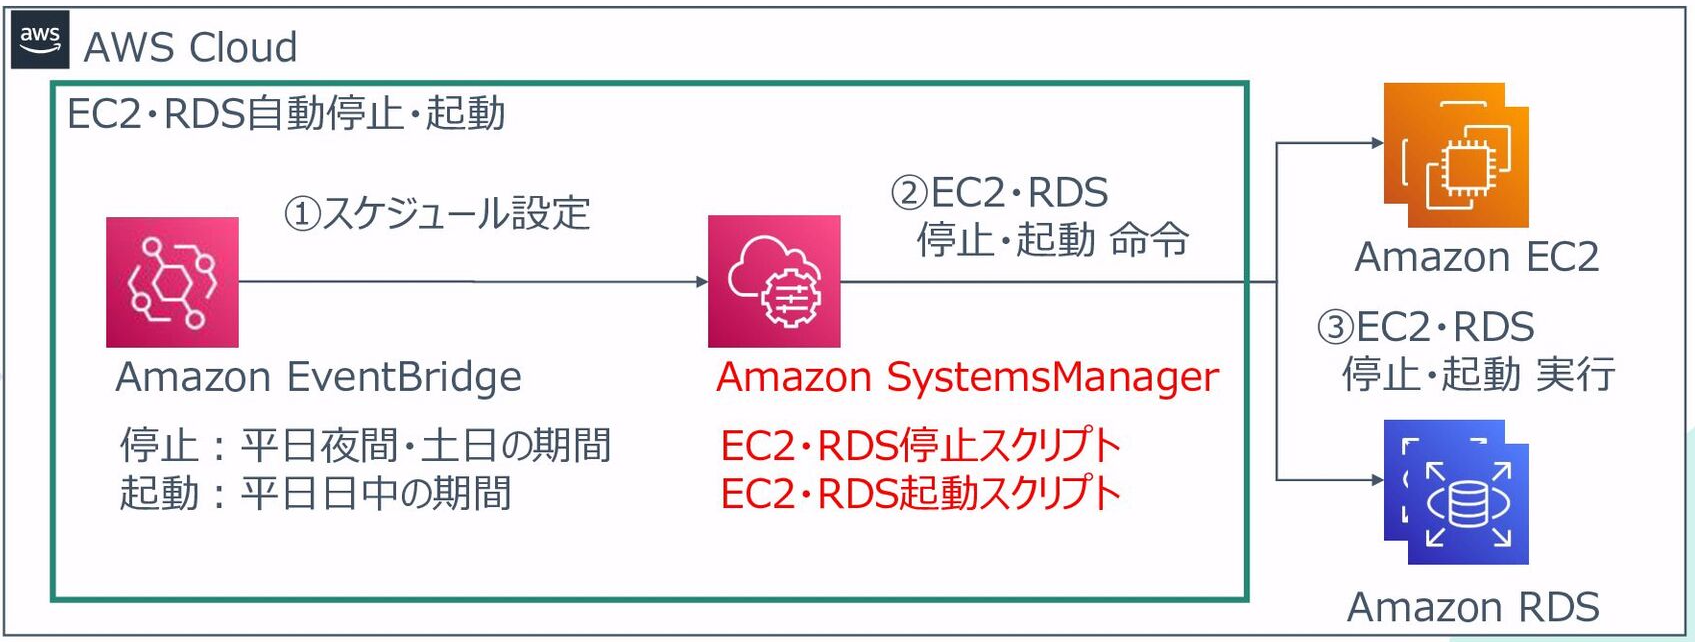 EC2・RDS自動停止・起動_構成図png.png